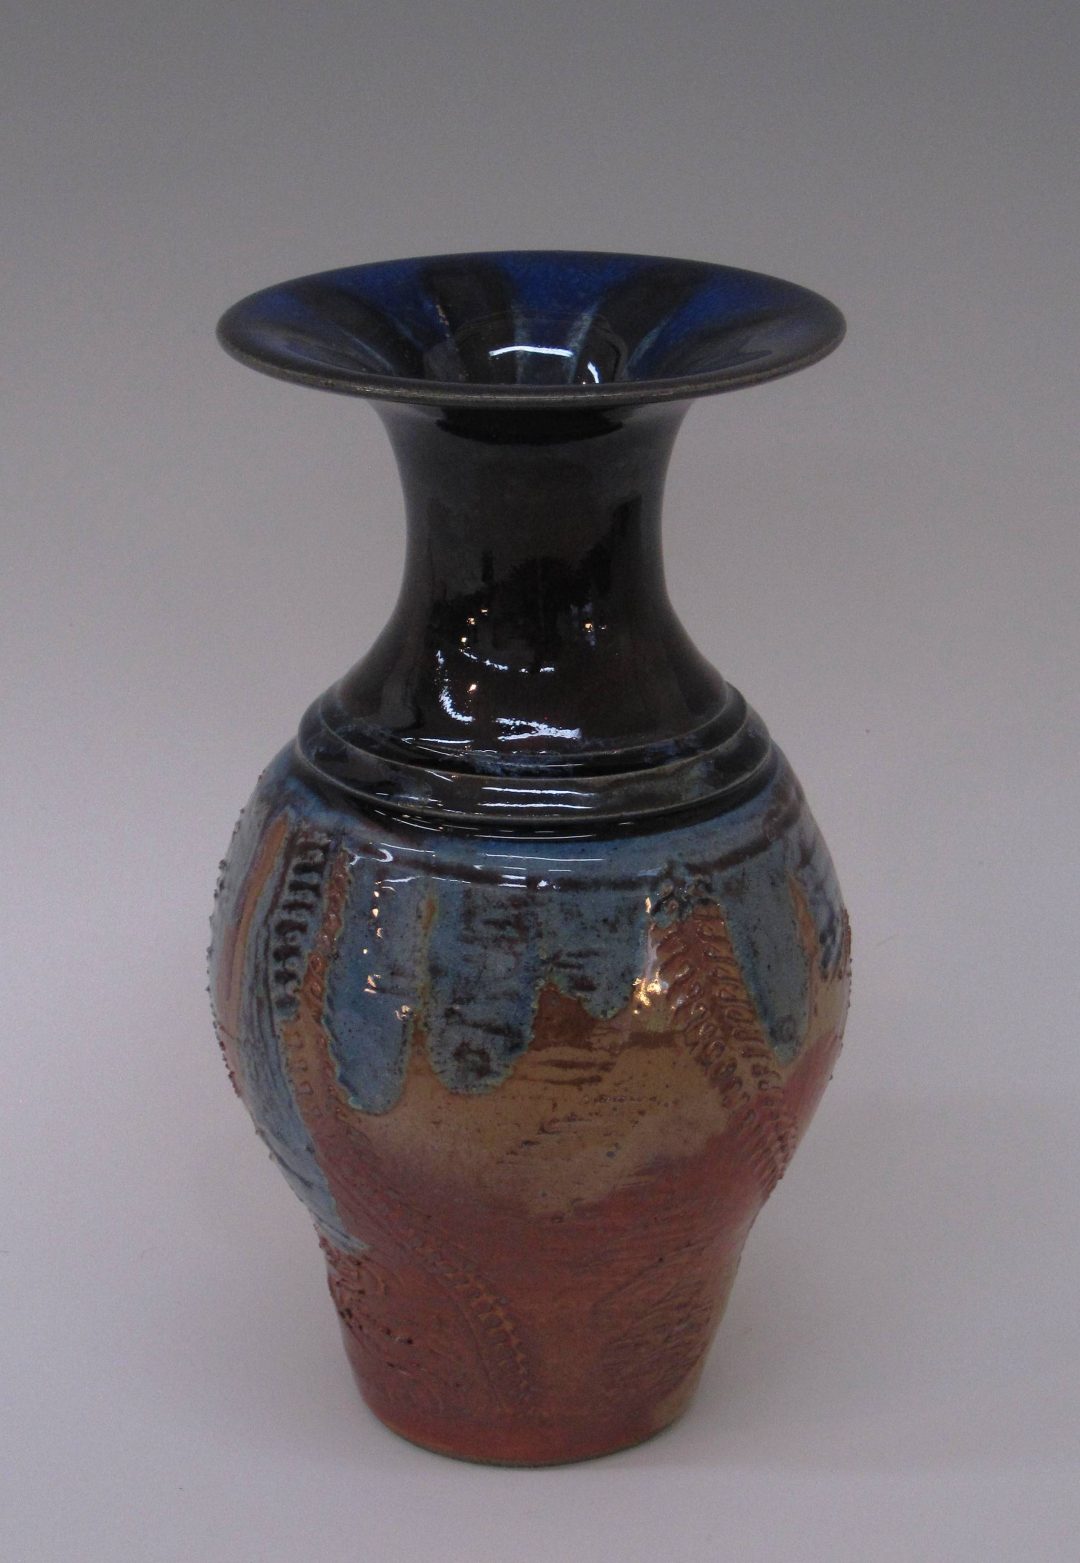 item # 236   10" x 5.25"  Vase